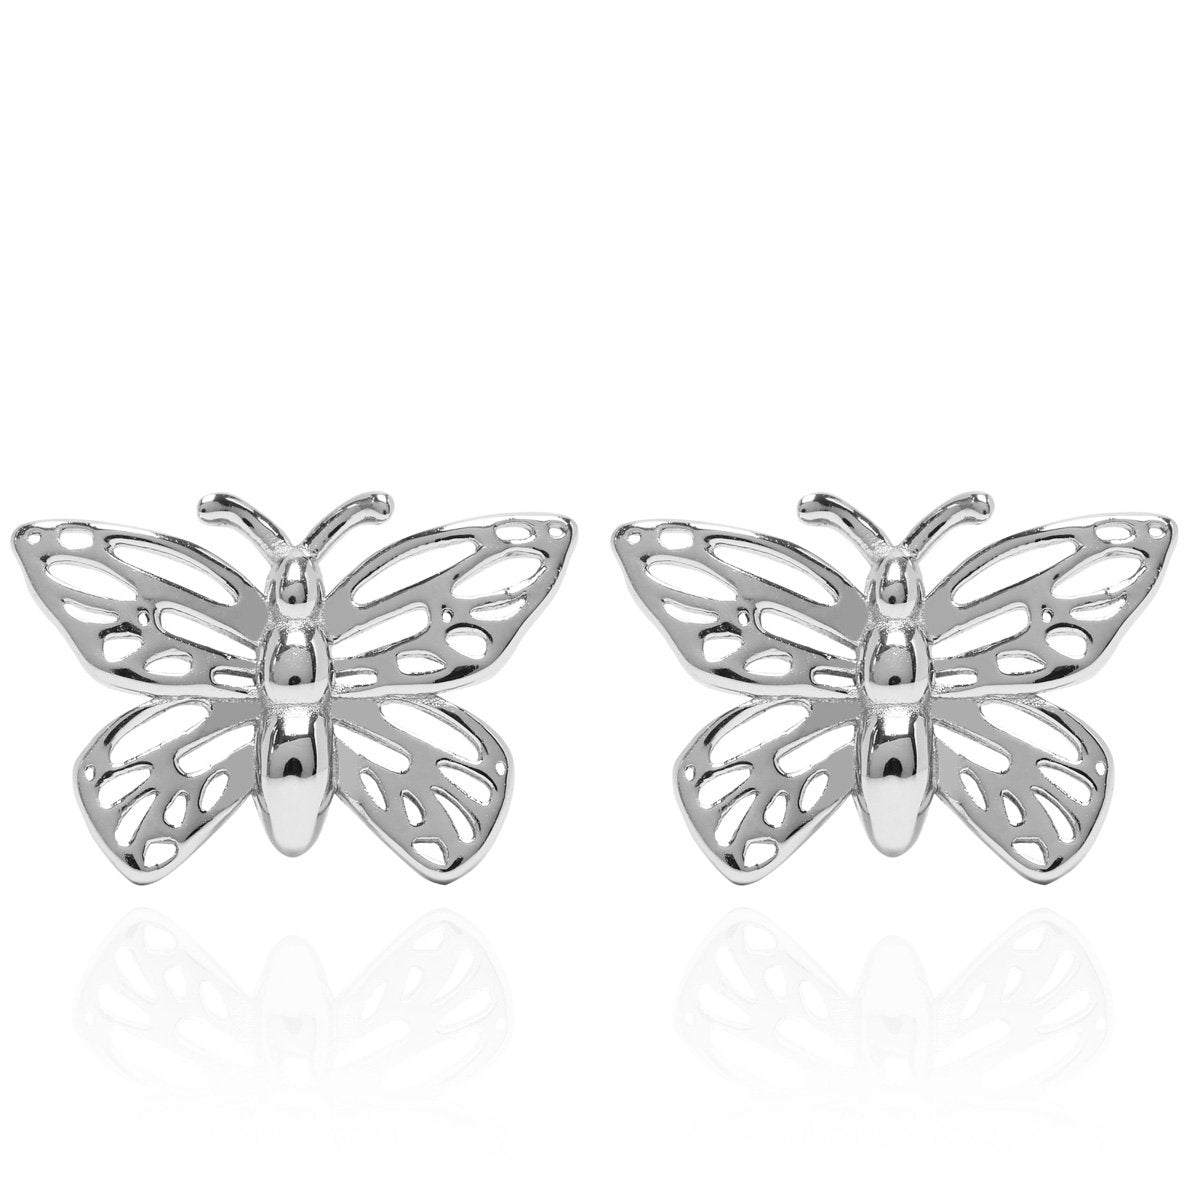 Butterfly Open Wing Silver Stud Earrings